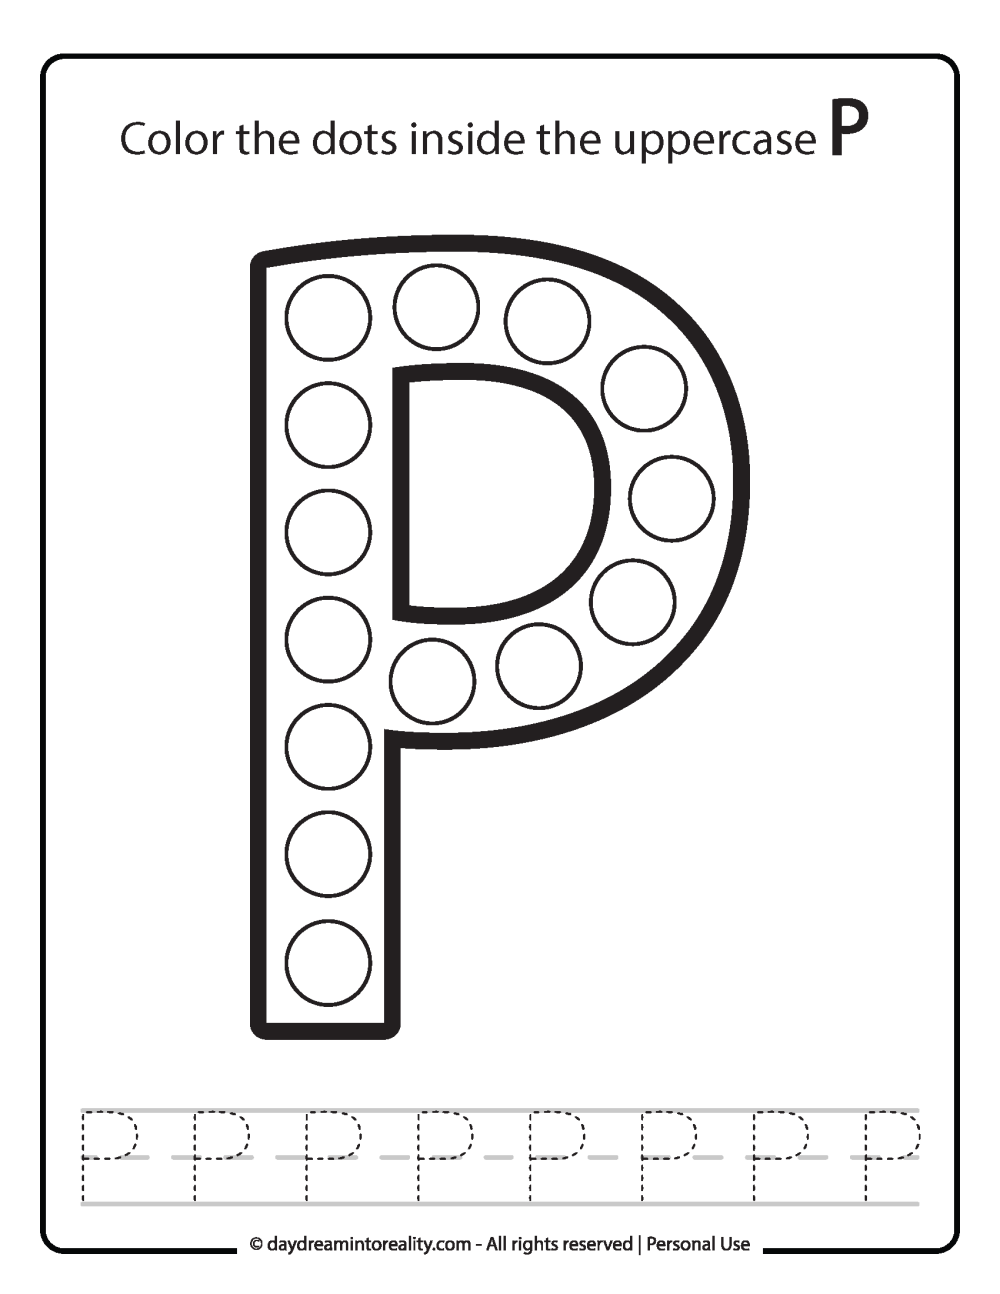 Uppercase "P" Dot Marker Worksheet Free Printable activity for kids (preschool, kindergarten)